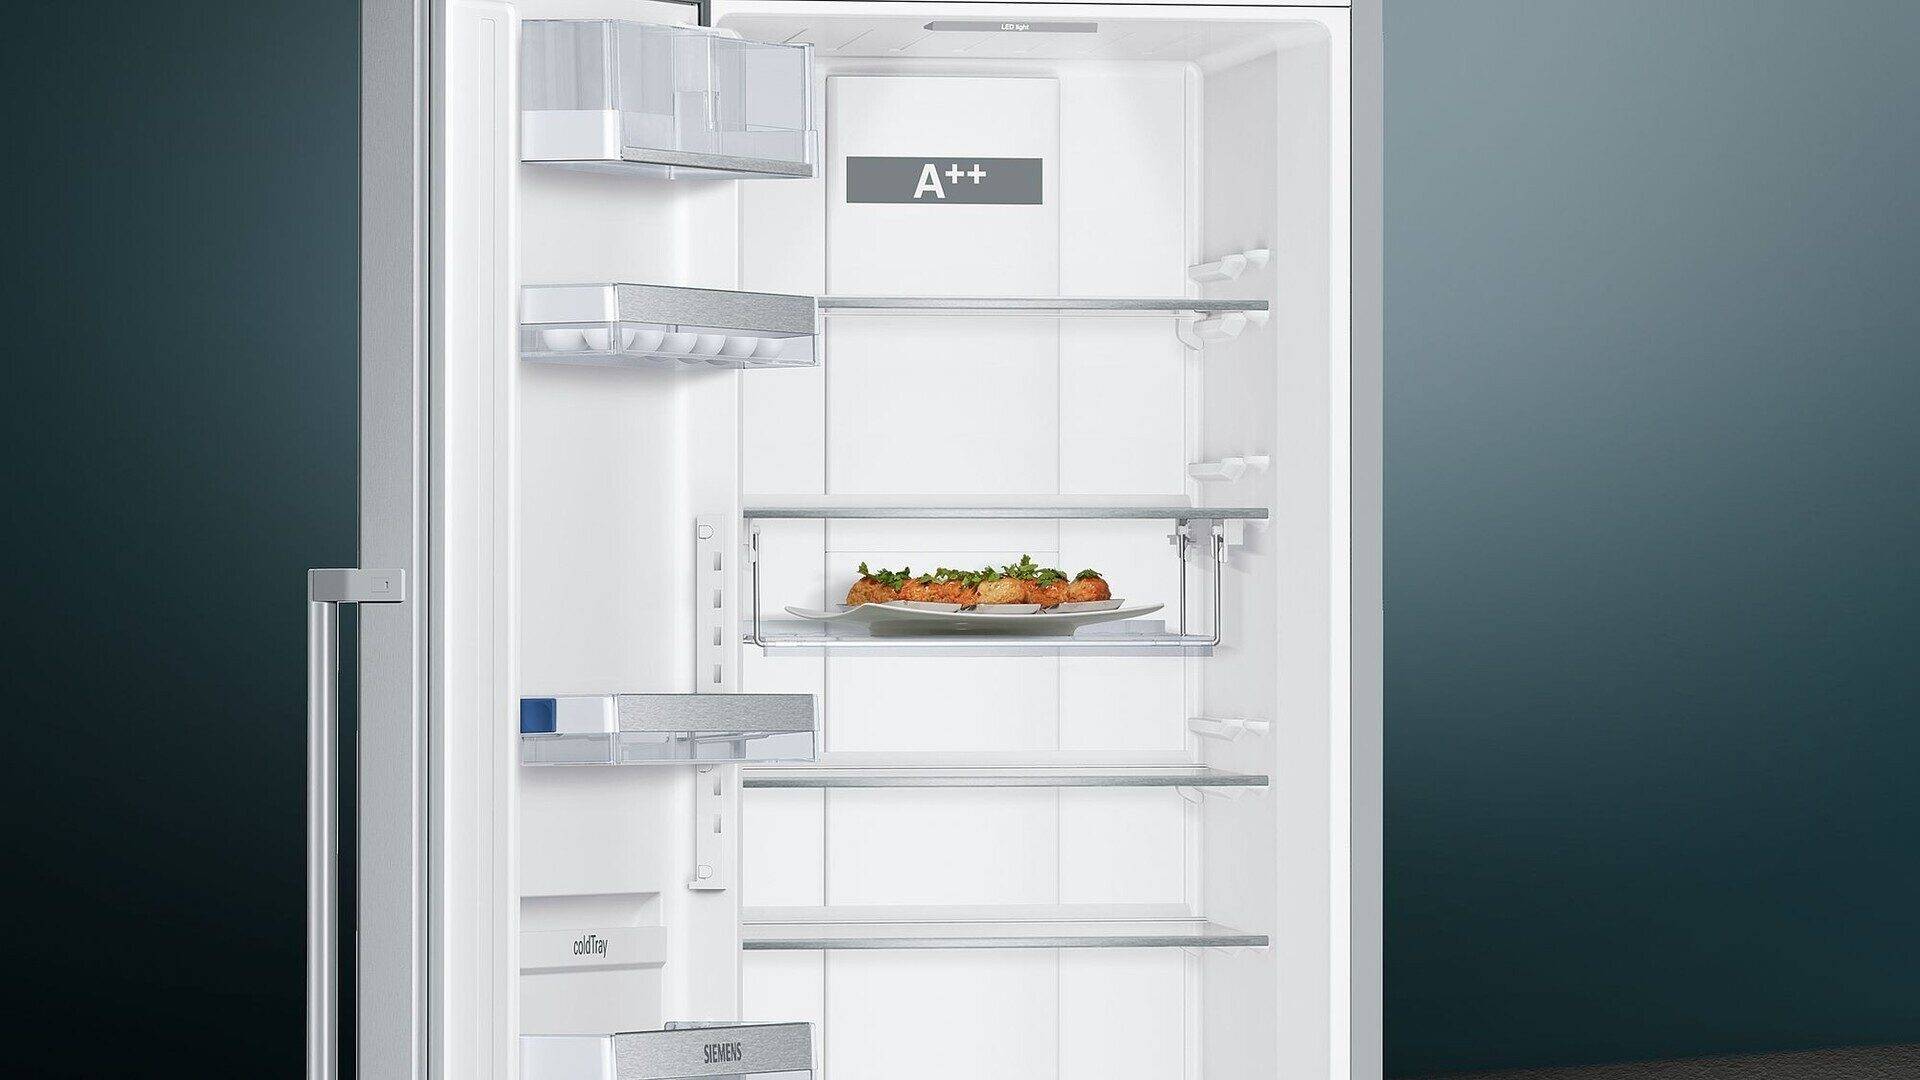 Холодильники сименс: как выбрать, преимущества и недостатки